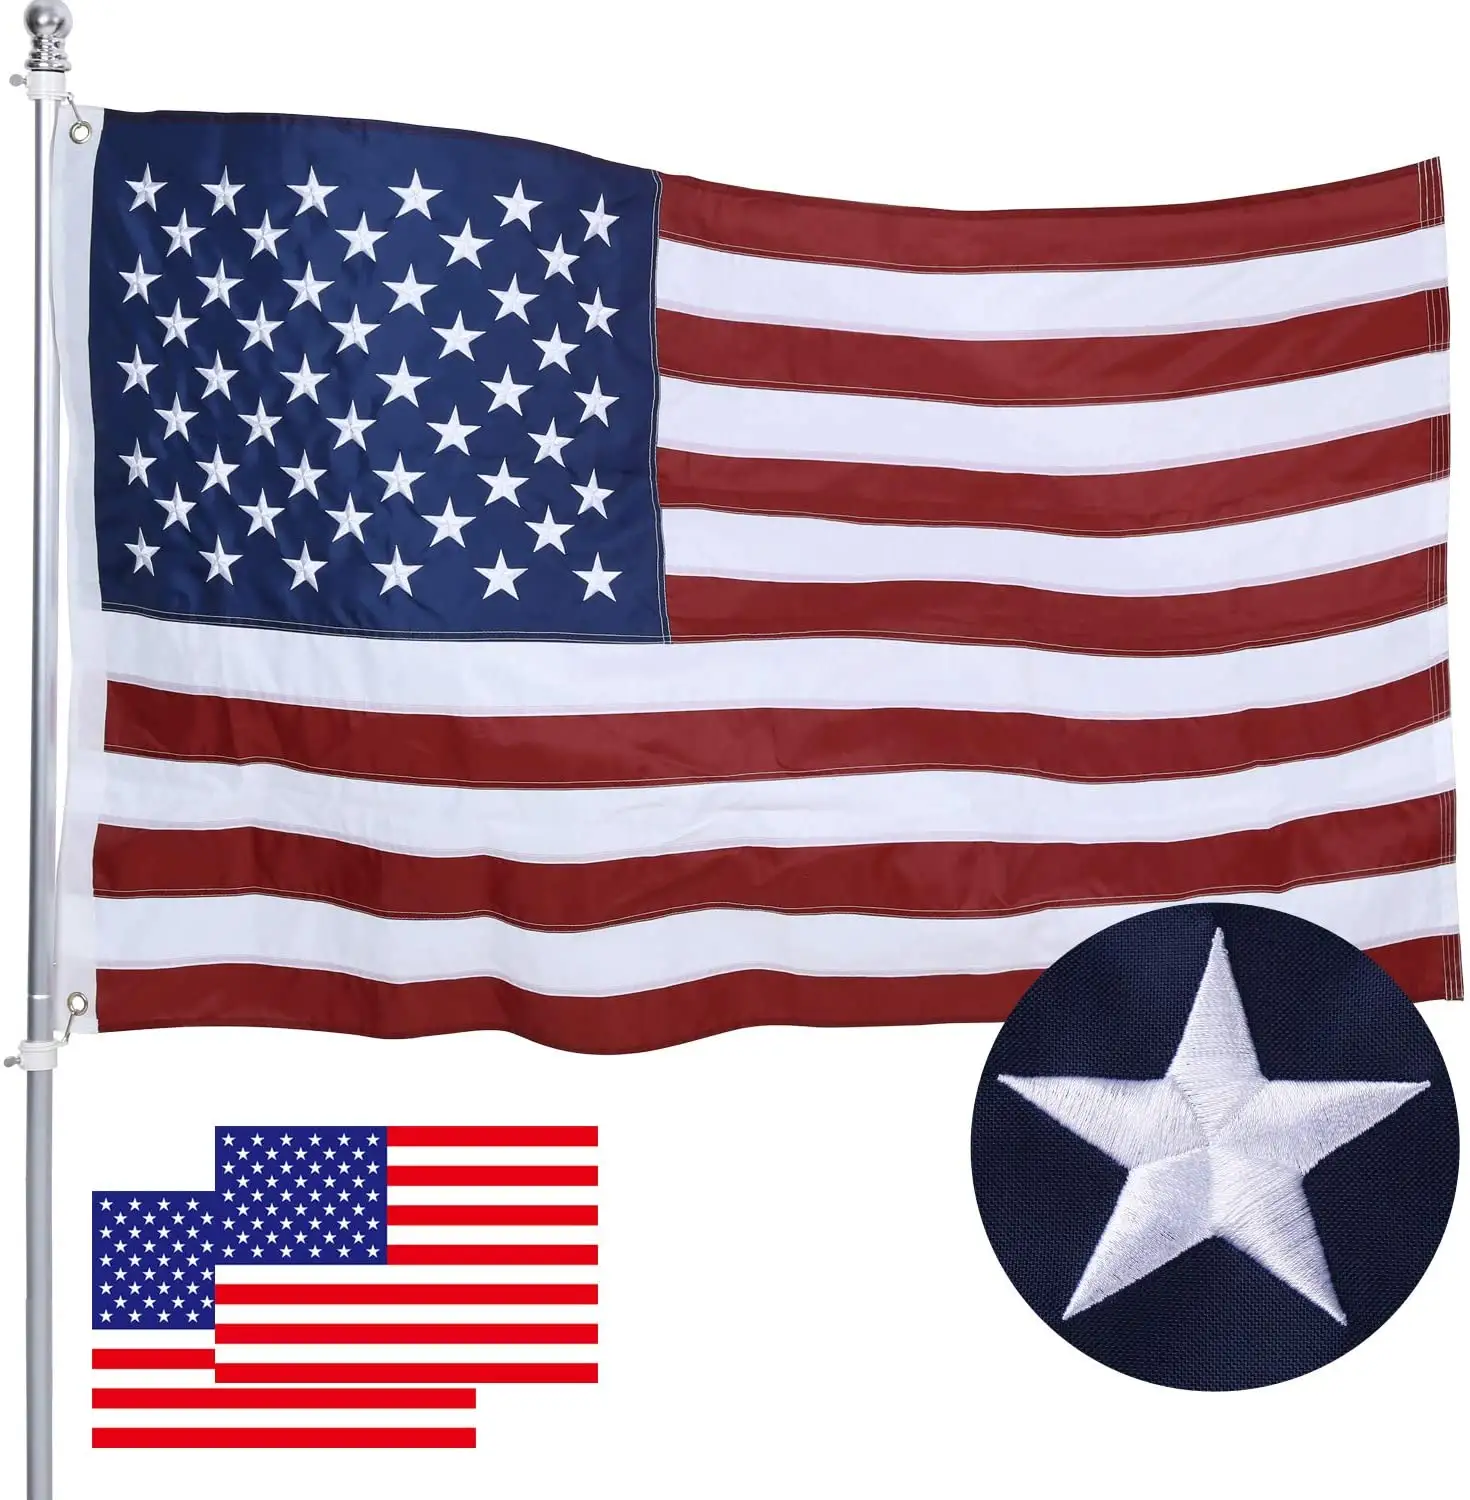 Bandeiras americanas 3x5, para fora dos eua, bandeira de luxo, estrelas bordadas, durável, bandeiras vivas, cores